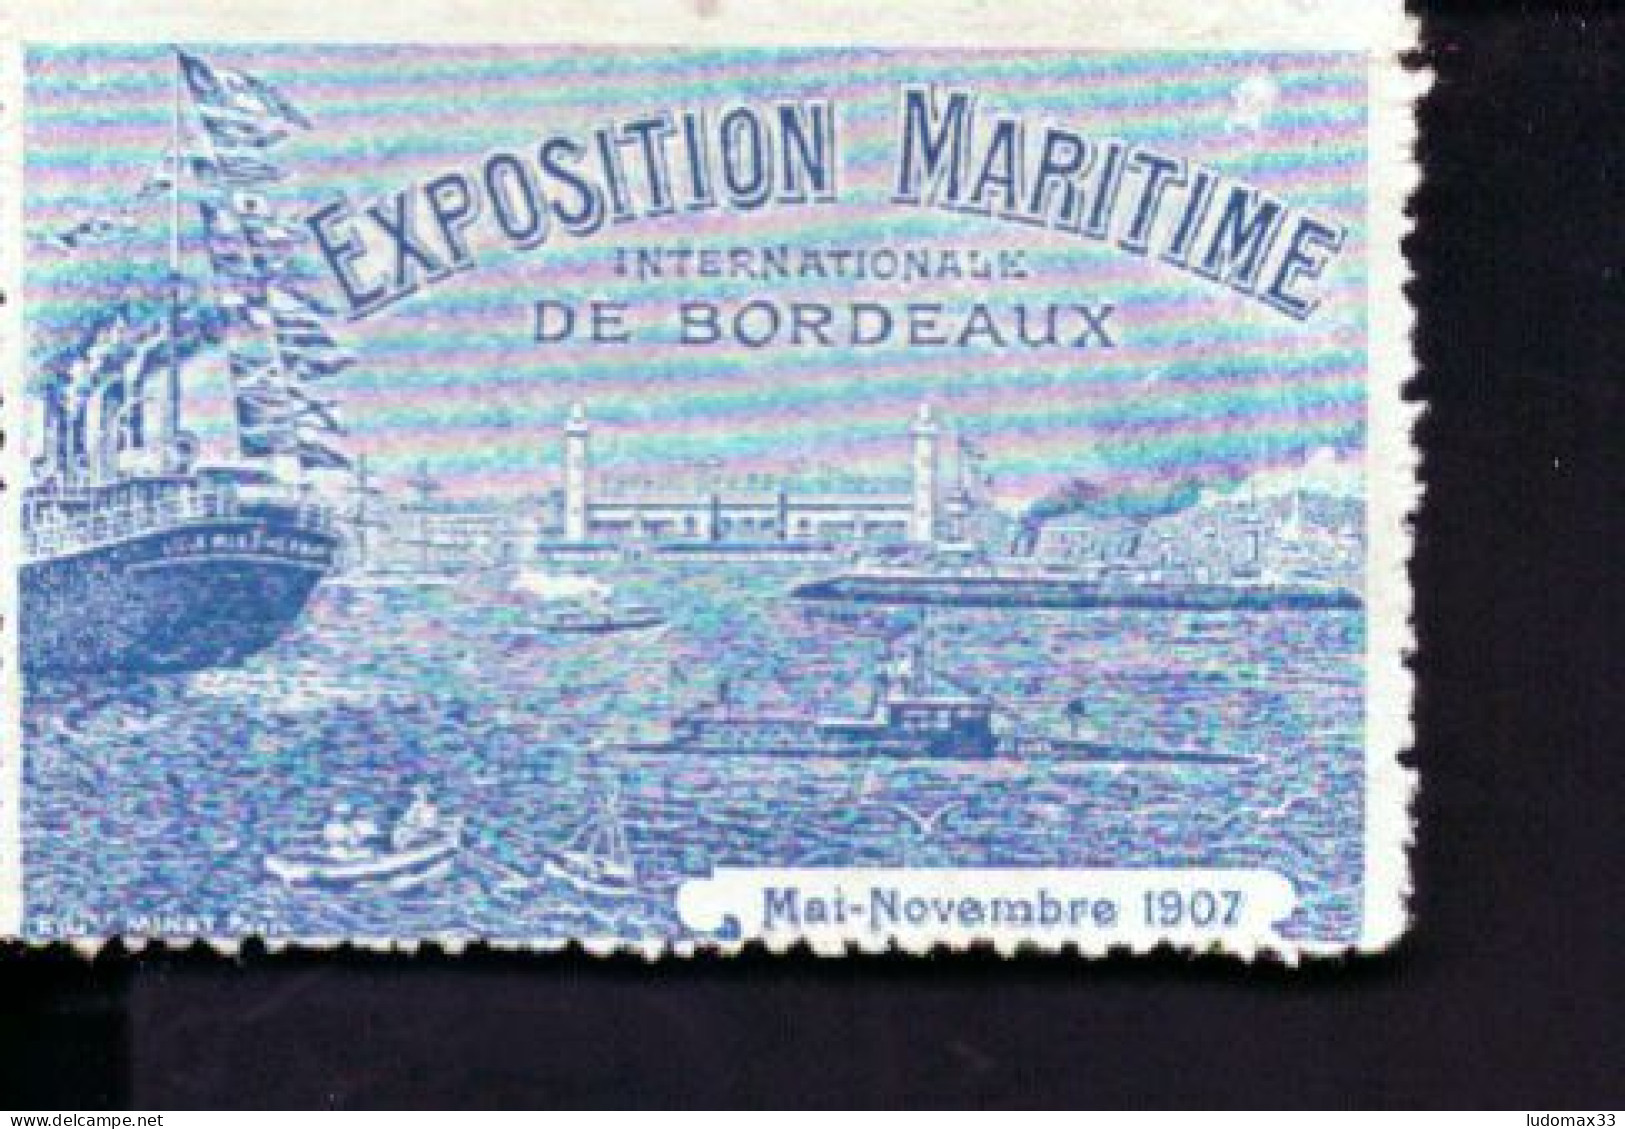 Vignette Exposition Maritime De Bordeaux - Philatelic Fairs